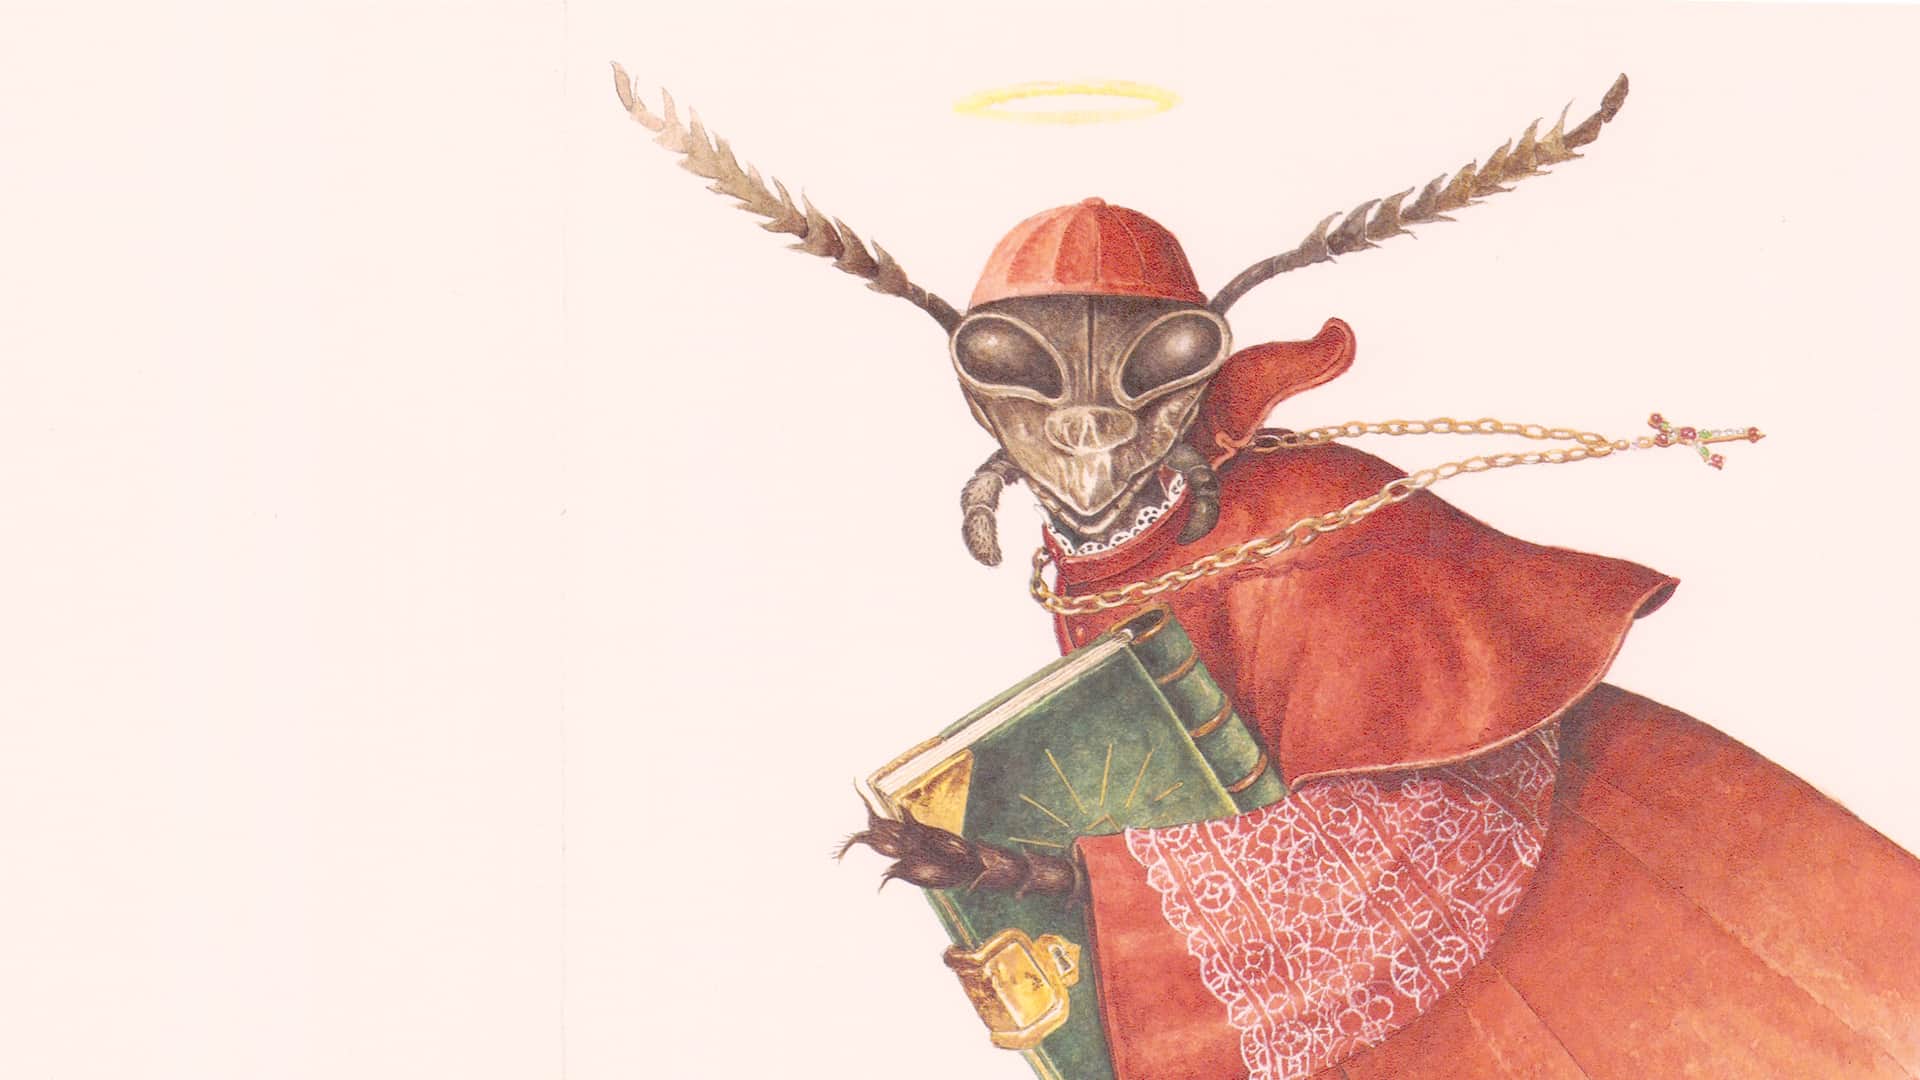 praying mantis bishop holding book artwork